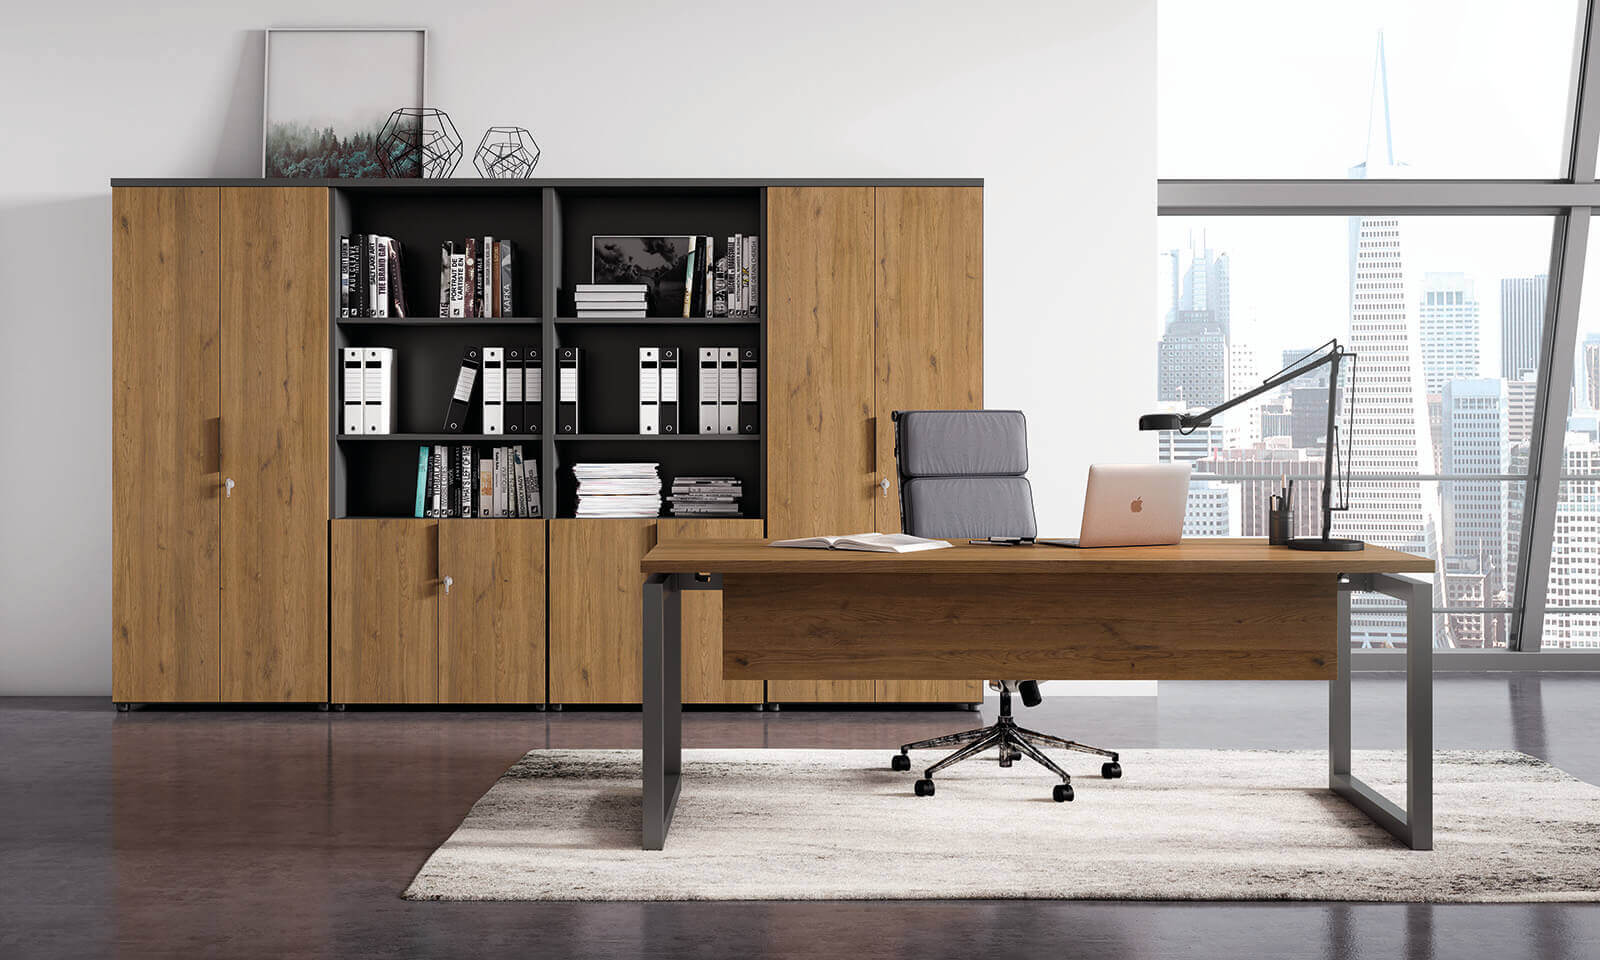 De qué sirve cambiar los muebles de la oficina?